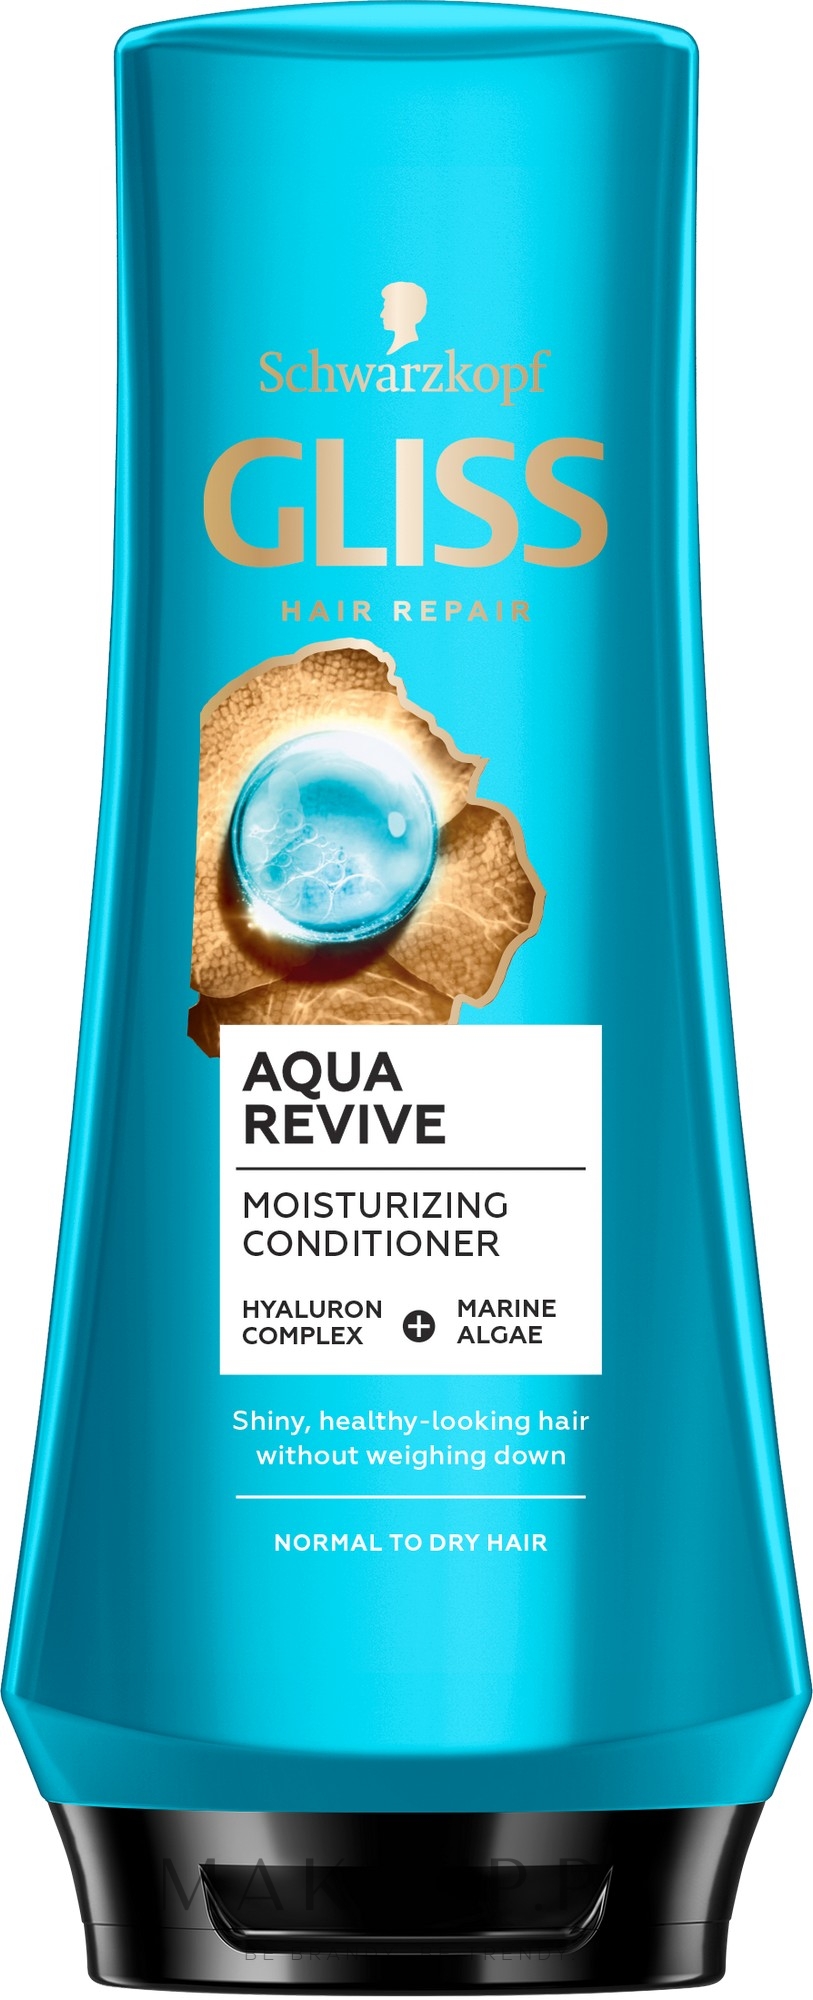 Odżywka do włosów - Gliss Aqua Revive Moisturizing Conditioner — Zdjęcie 200 ml